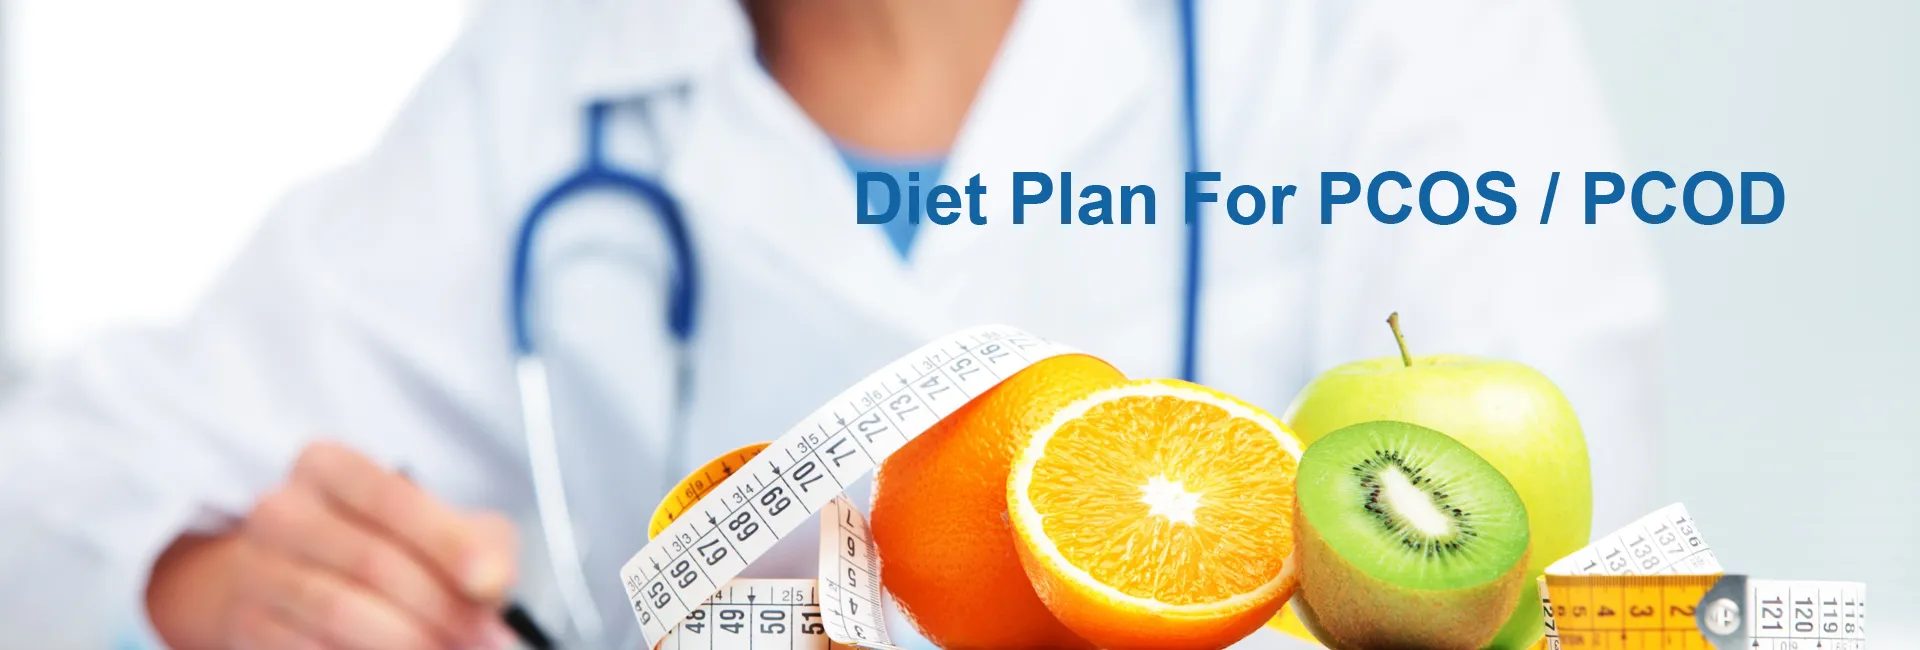 Diet Plan For PCOS / PCOD In Al Khawaneej